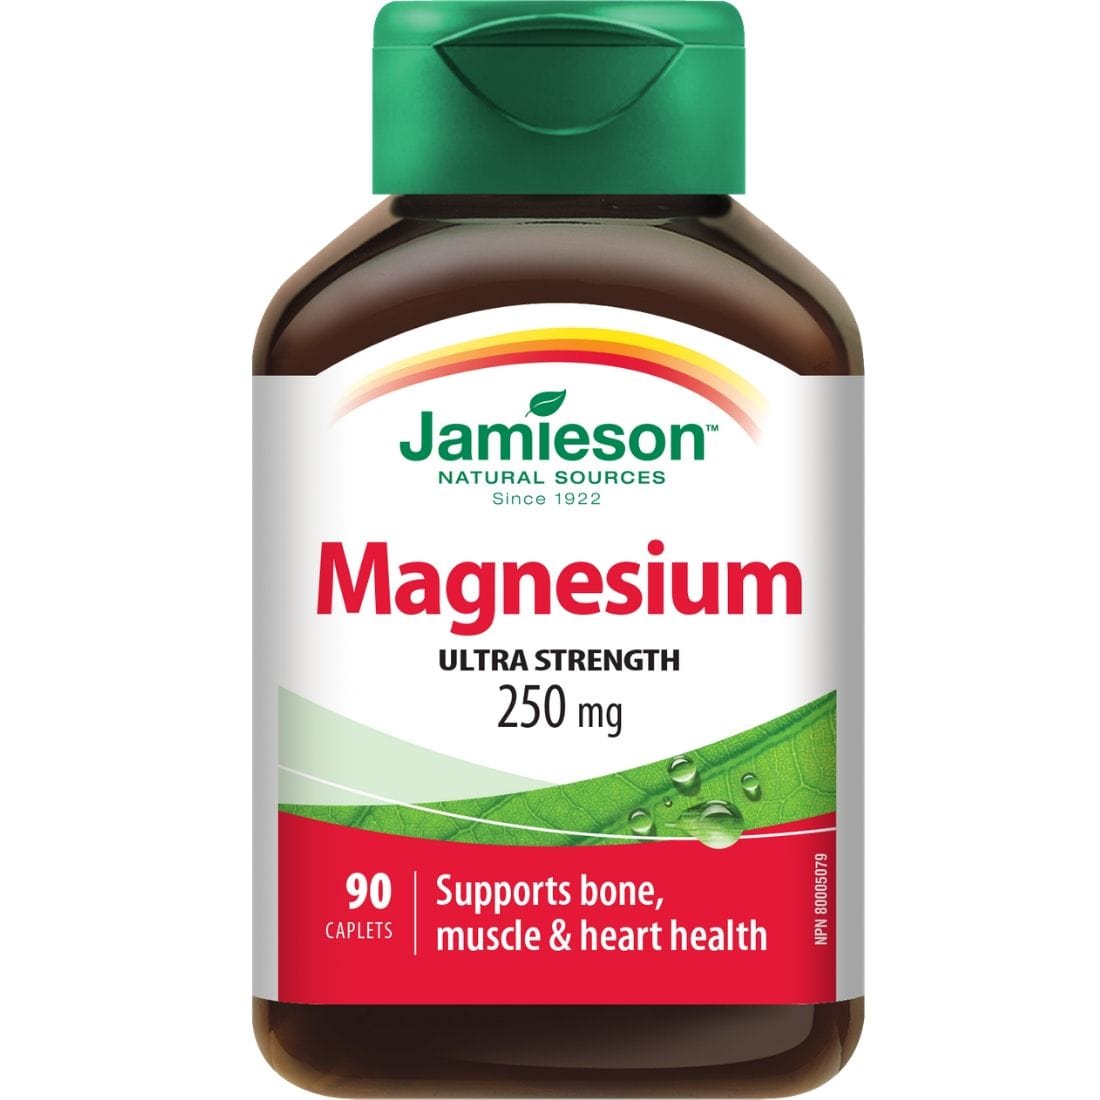 Jamieson Magnesium 250mg, 90 Caplets